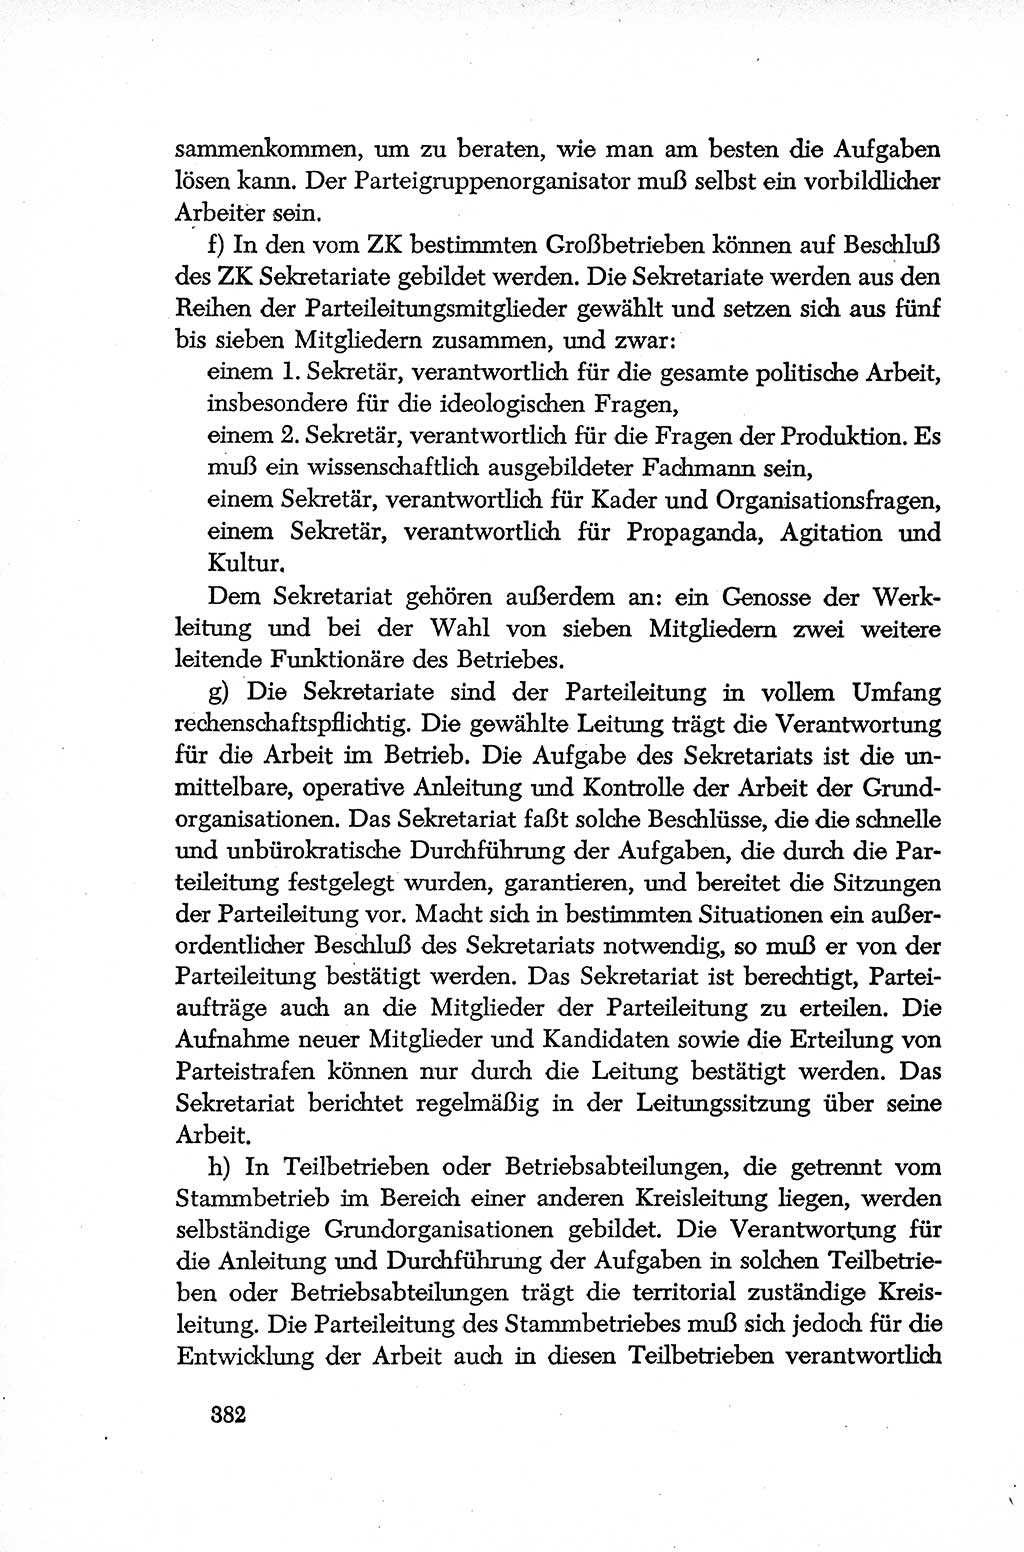 Dokumente der Sozialistischen Einheitspartei Deutschlands (SED) [Deutsche Demokratische Republik (DDR)] 1952-1953, Seite 382 (Dok. SED DDR 1952-1953, S. 382)